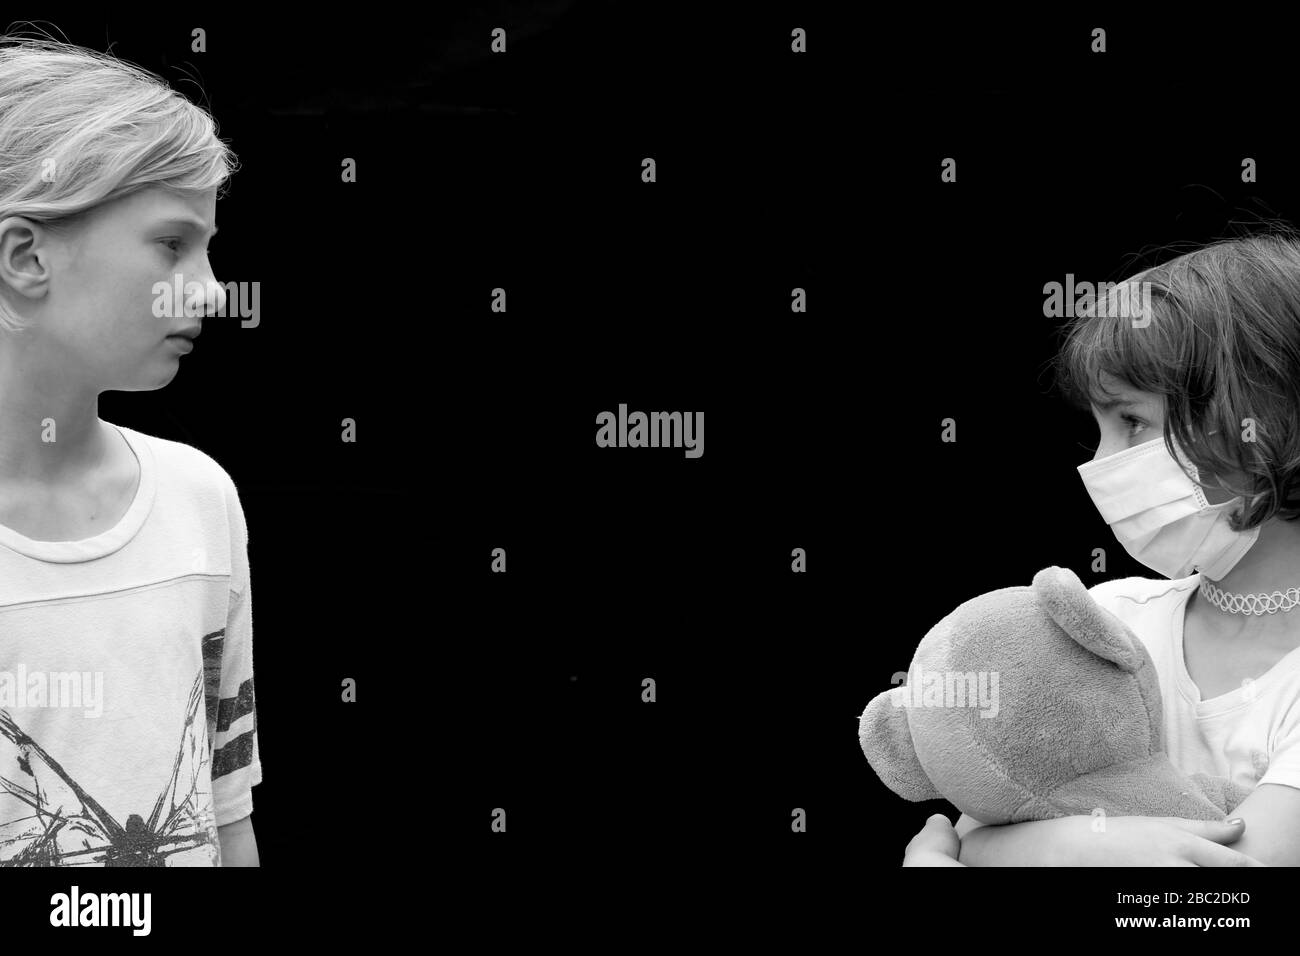 Schwarz-Weiß-Porträt der sozialen Distanz zwischen zwei kleinen Kindern, eines trägt Gesichtsmaske und hält Teddybär Stockfoto